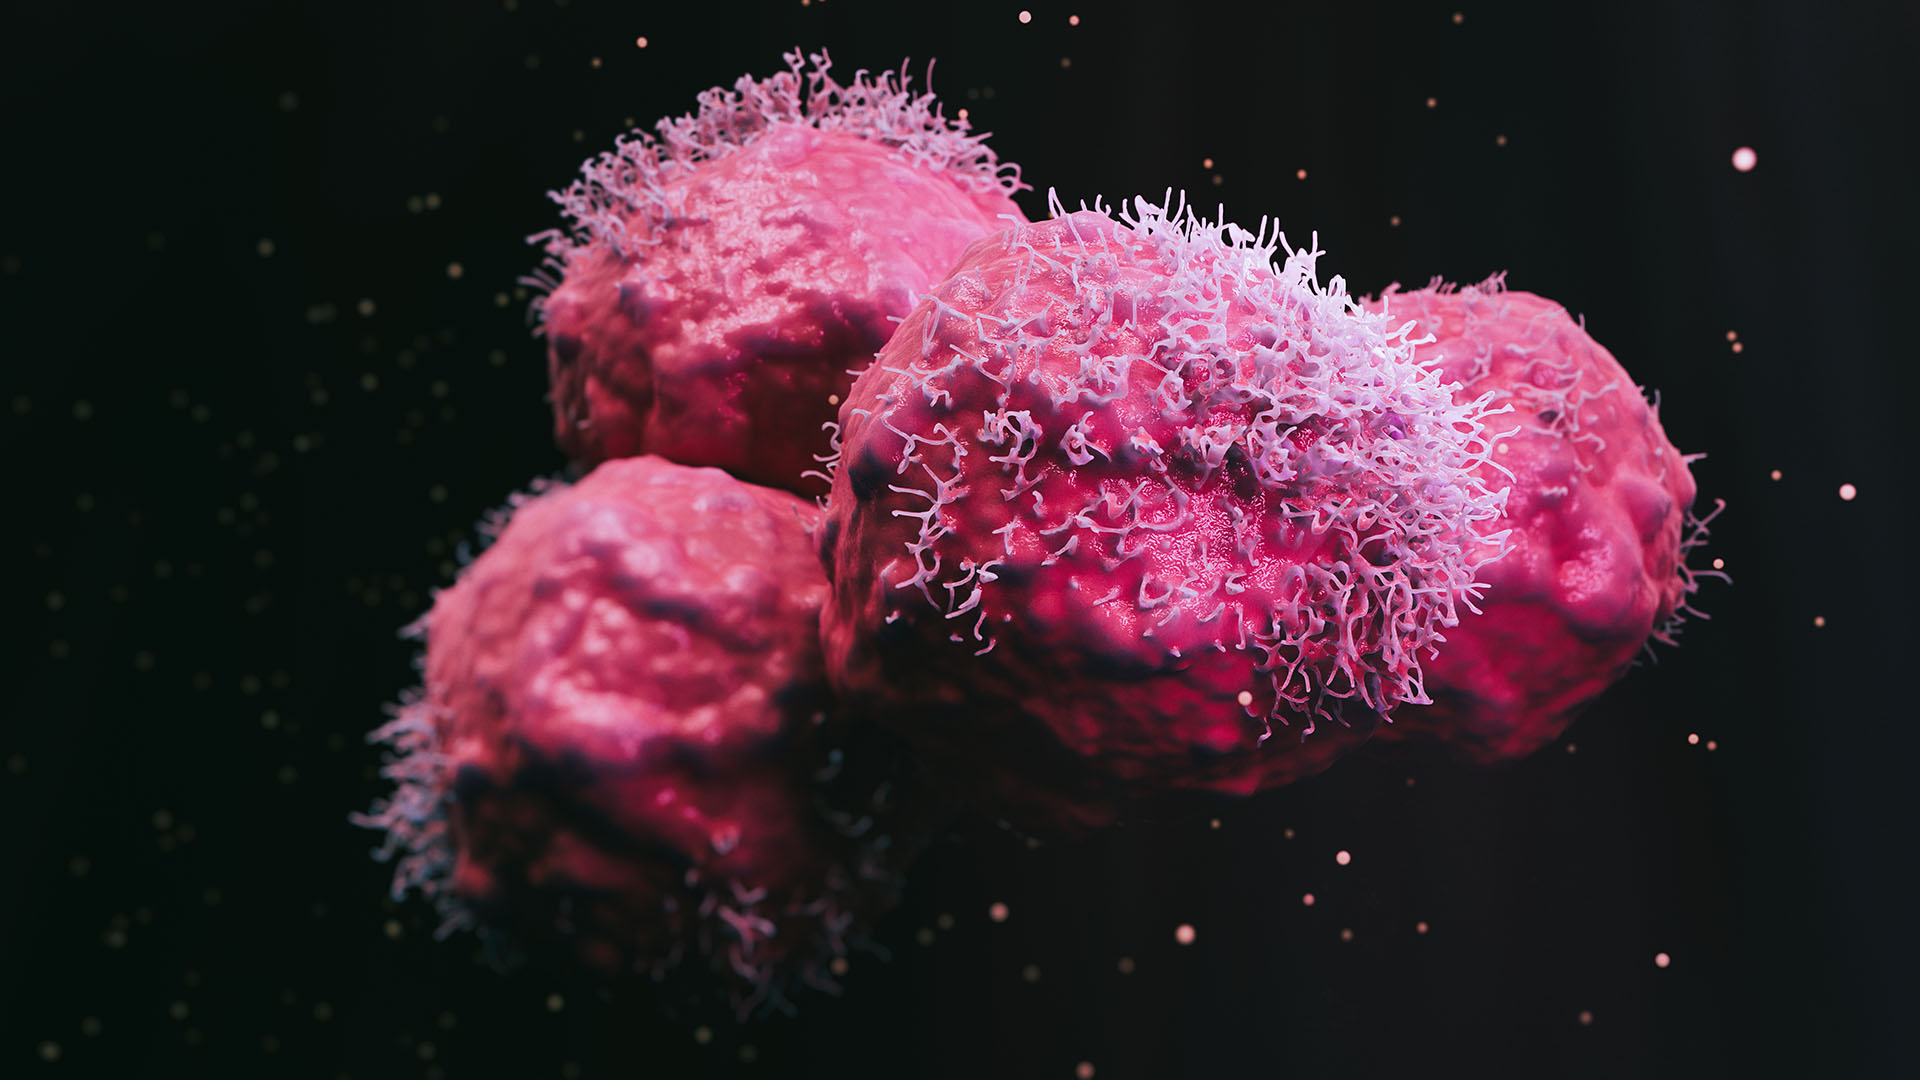 El ambicioso proyecto de los científicos españoles busca destruir las células tumorales desde adentro  (Getty Images)